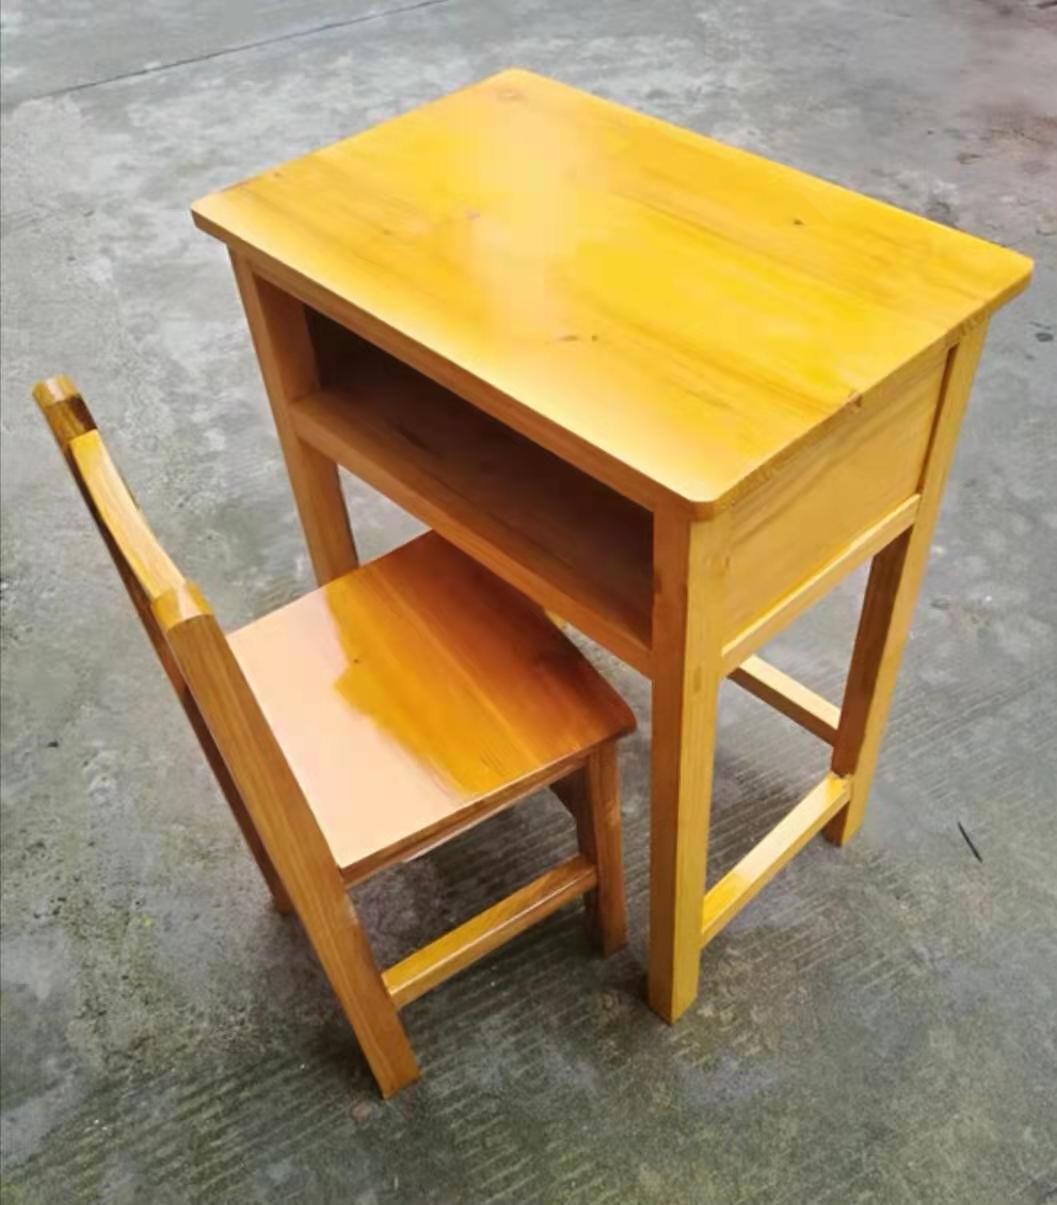 課桌椅